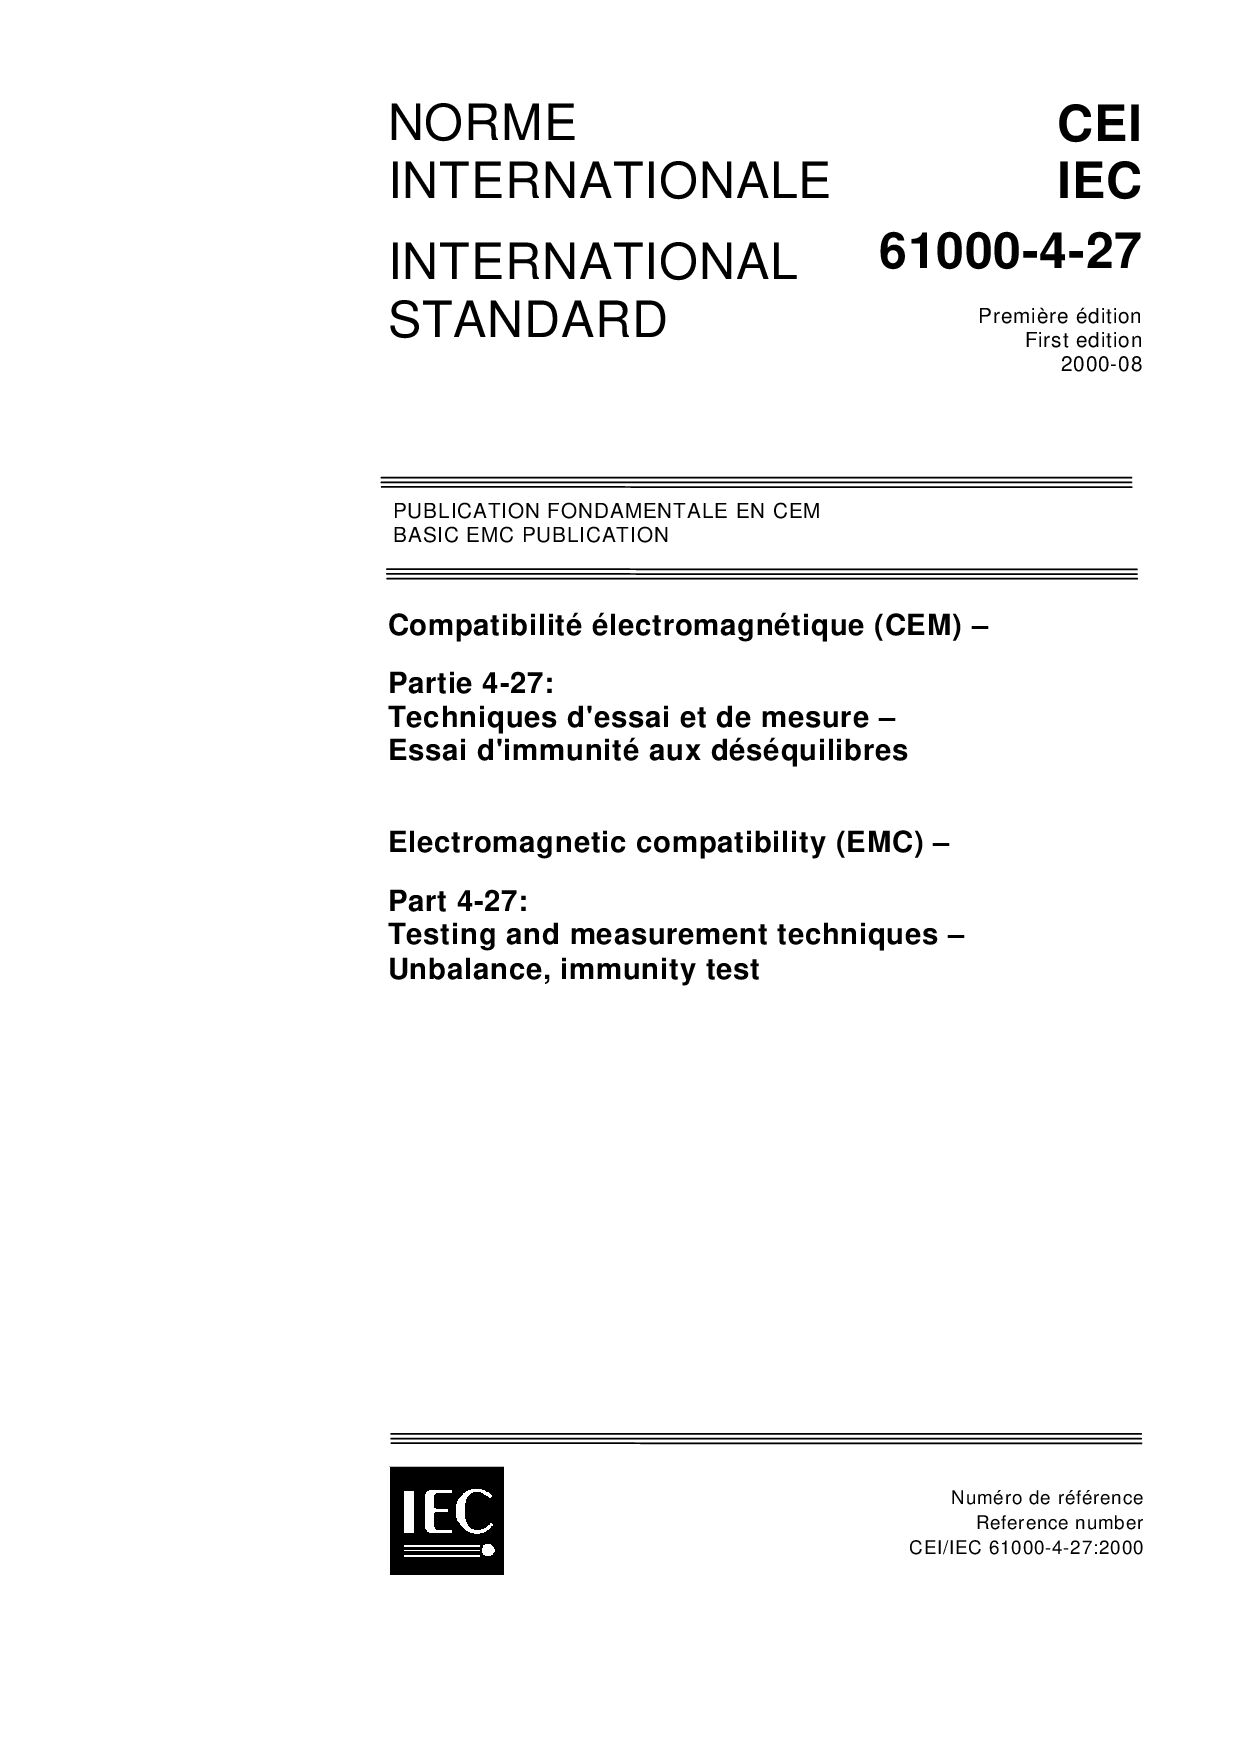 IEC 61000-4-27:2000